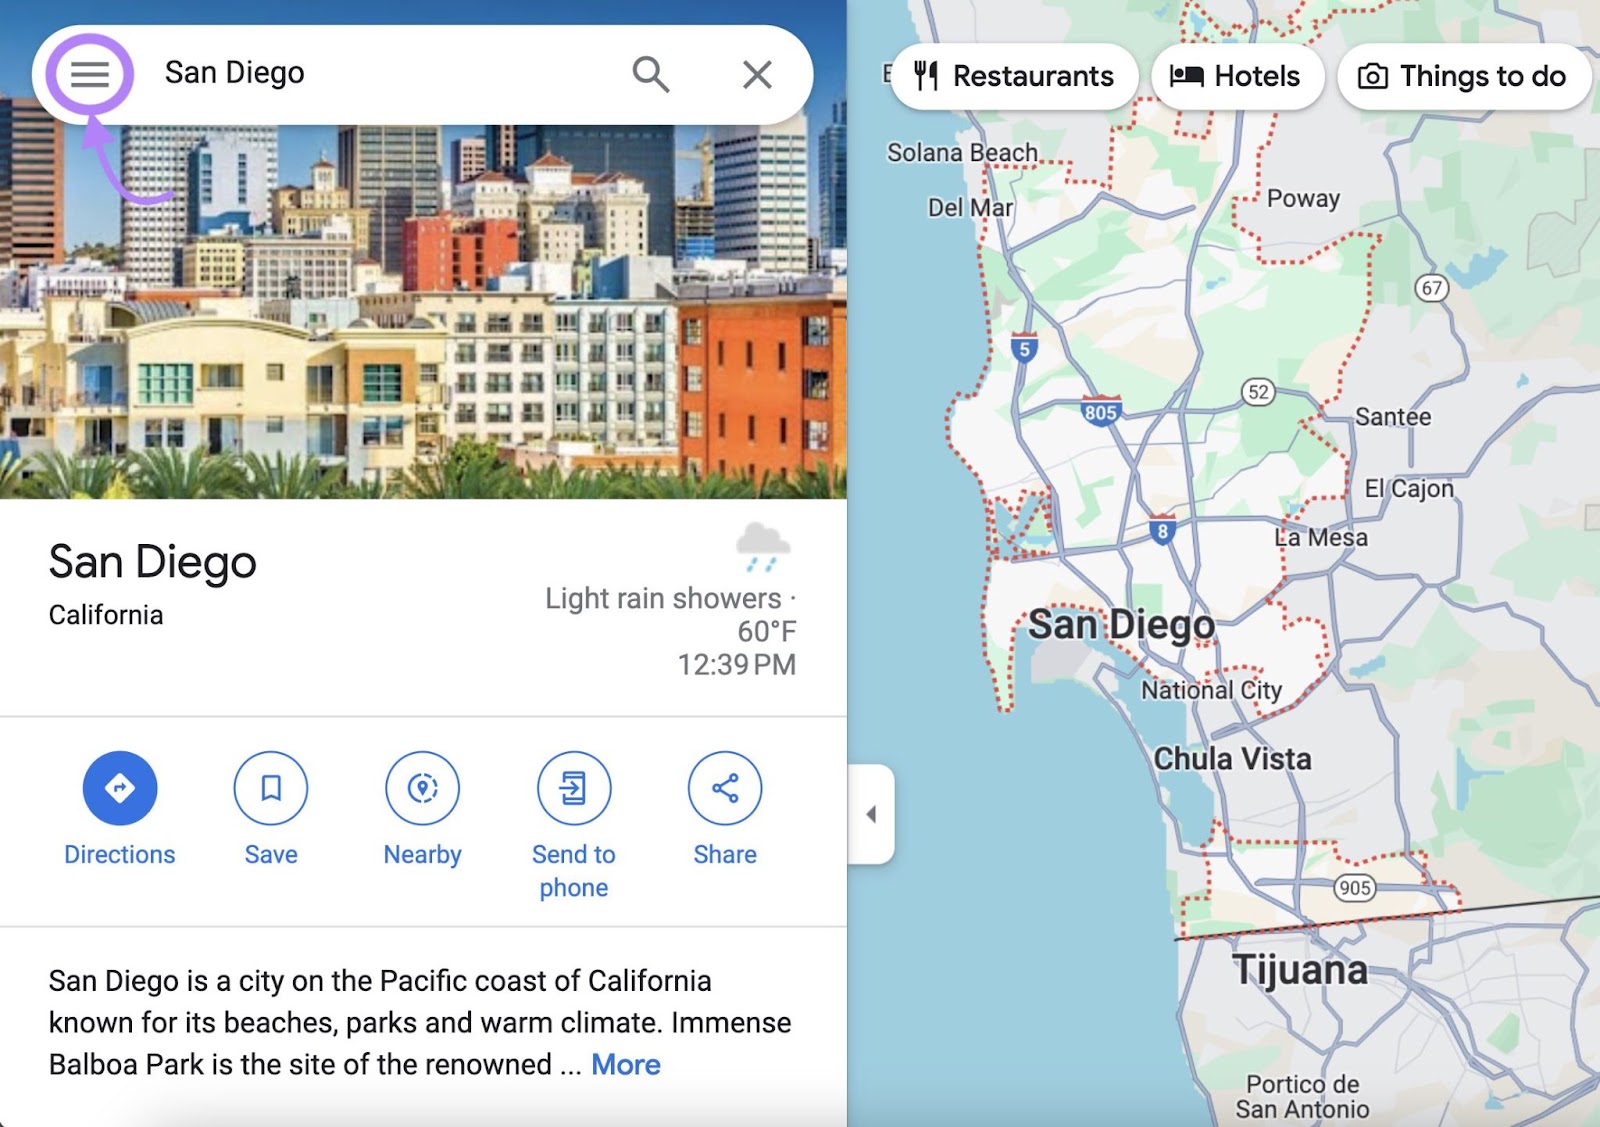 San Diego shown in Google Maps